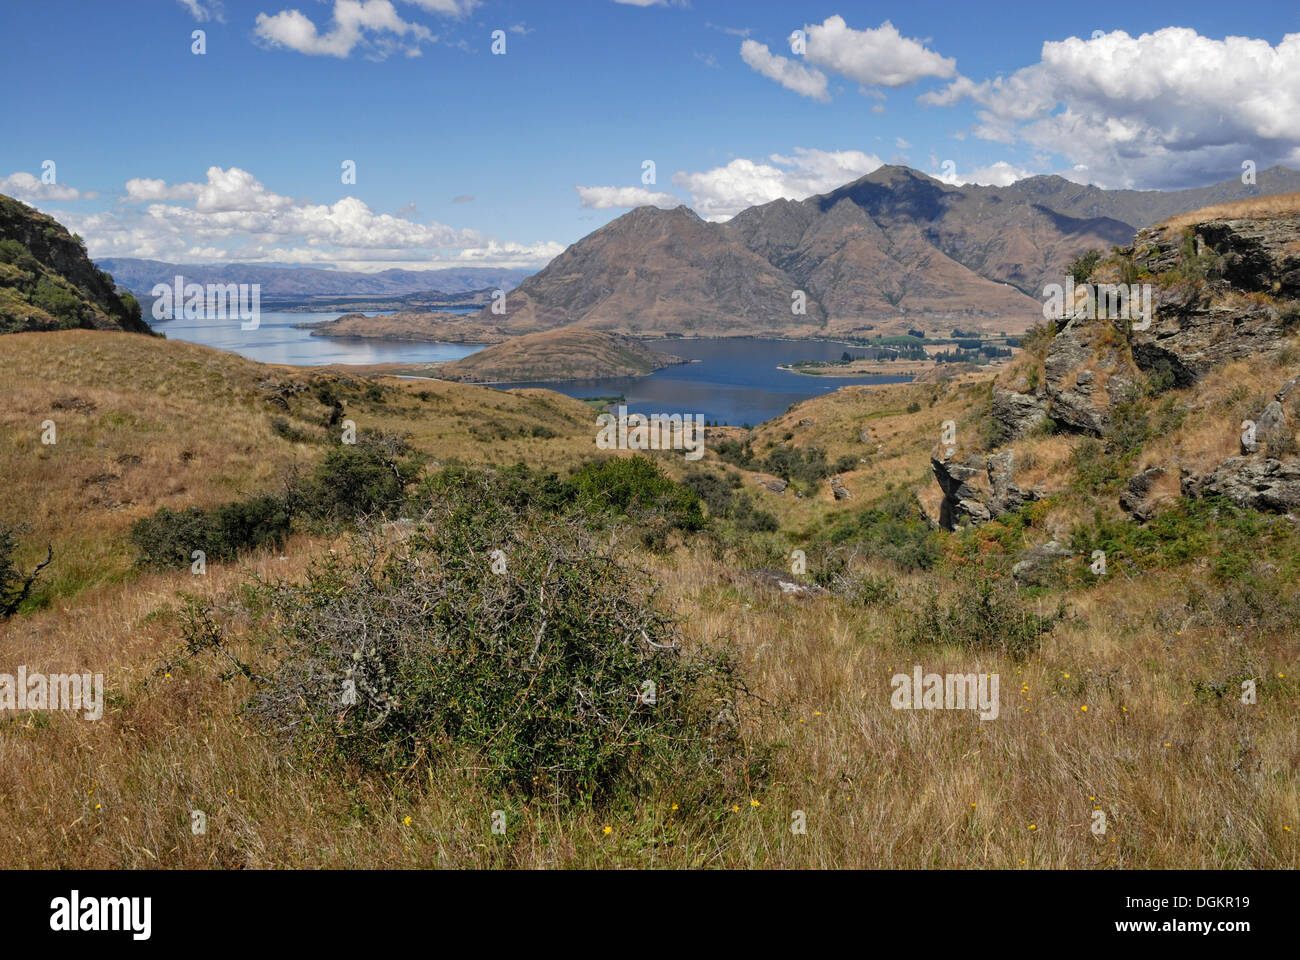 View from Rocky Mountain to Lake Wanaka, Wanaka, South Island, New Zealand Stock Photo